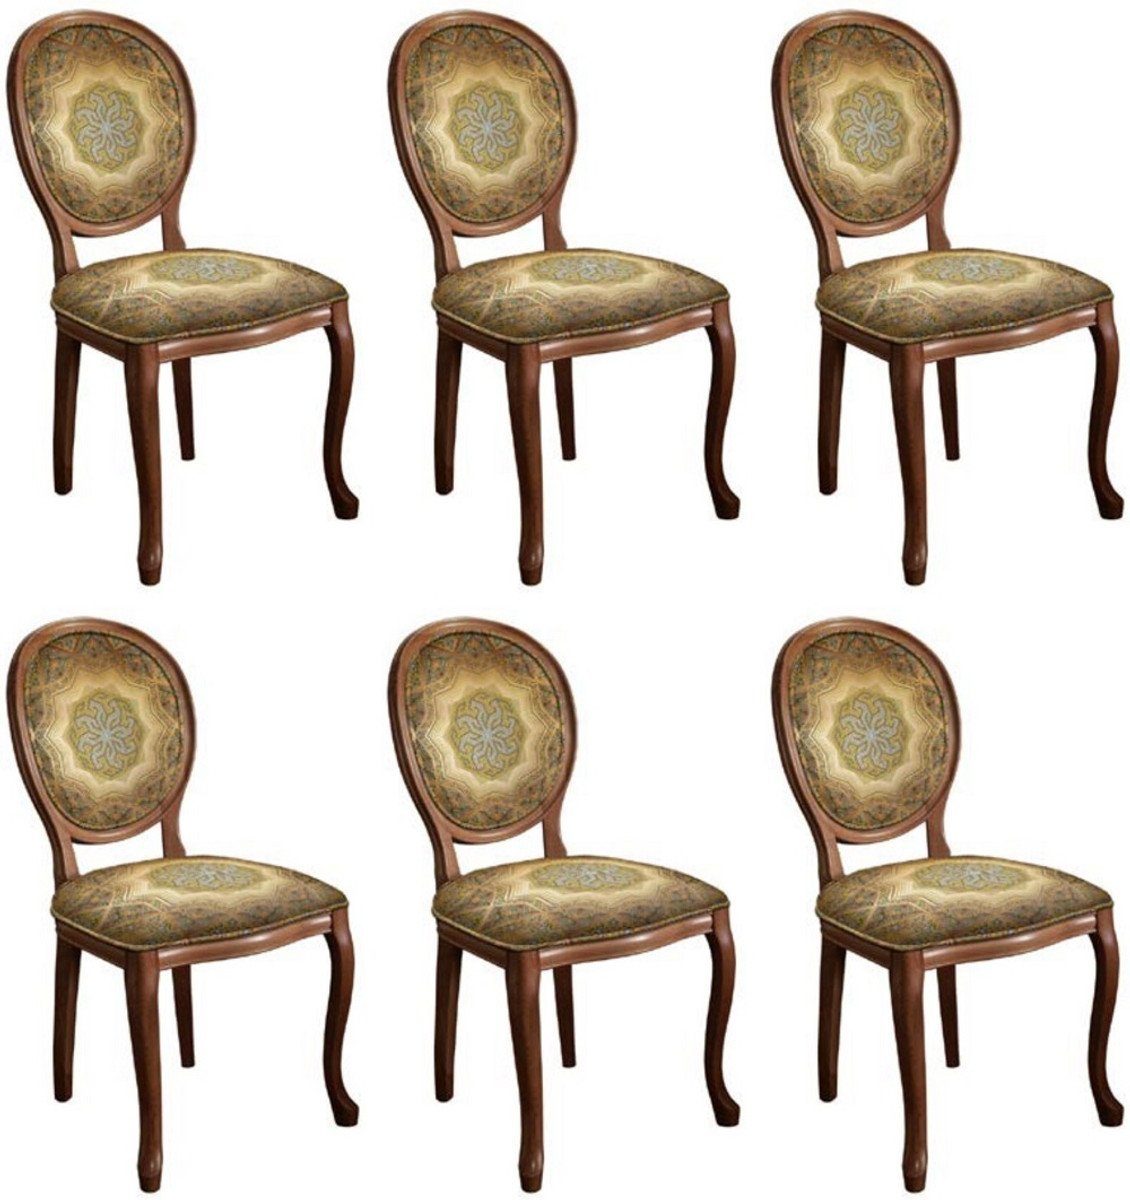 Casa Padrino Esszimmerstuhl Barock Esszimmerstuhl Set Mehrfarbig / Braun - 6 Handgefertigte Massivholz Küchen Stühle im Barockstil - Barock Esszimmer Möbel